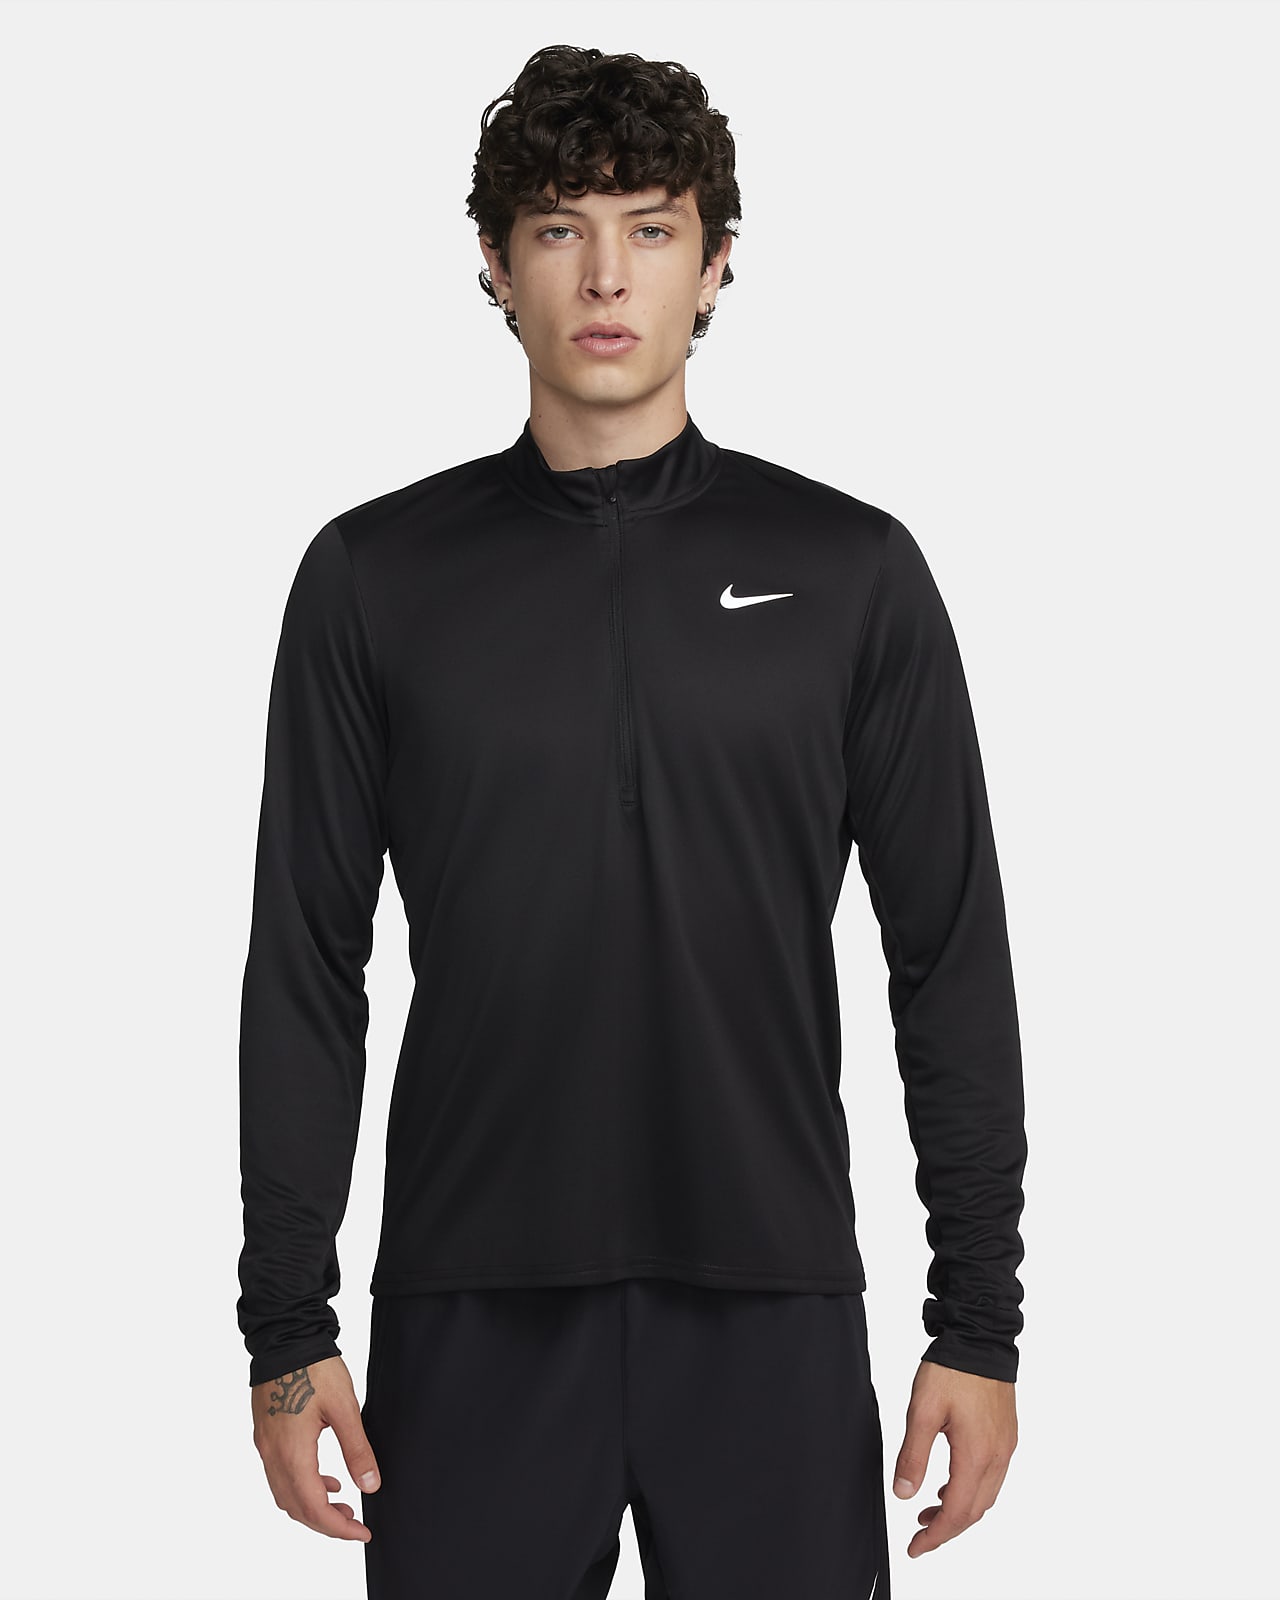 Ανδρική μπλούζα Dri-FIT για τρέξιμο με φερμουάρ στο 1/2 του μήκους Nike Pacer